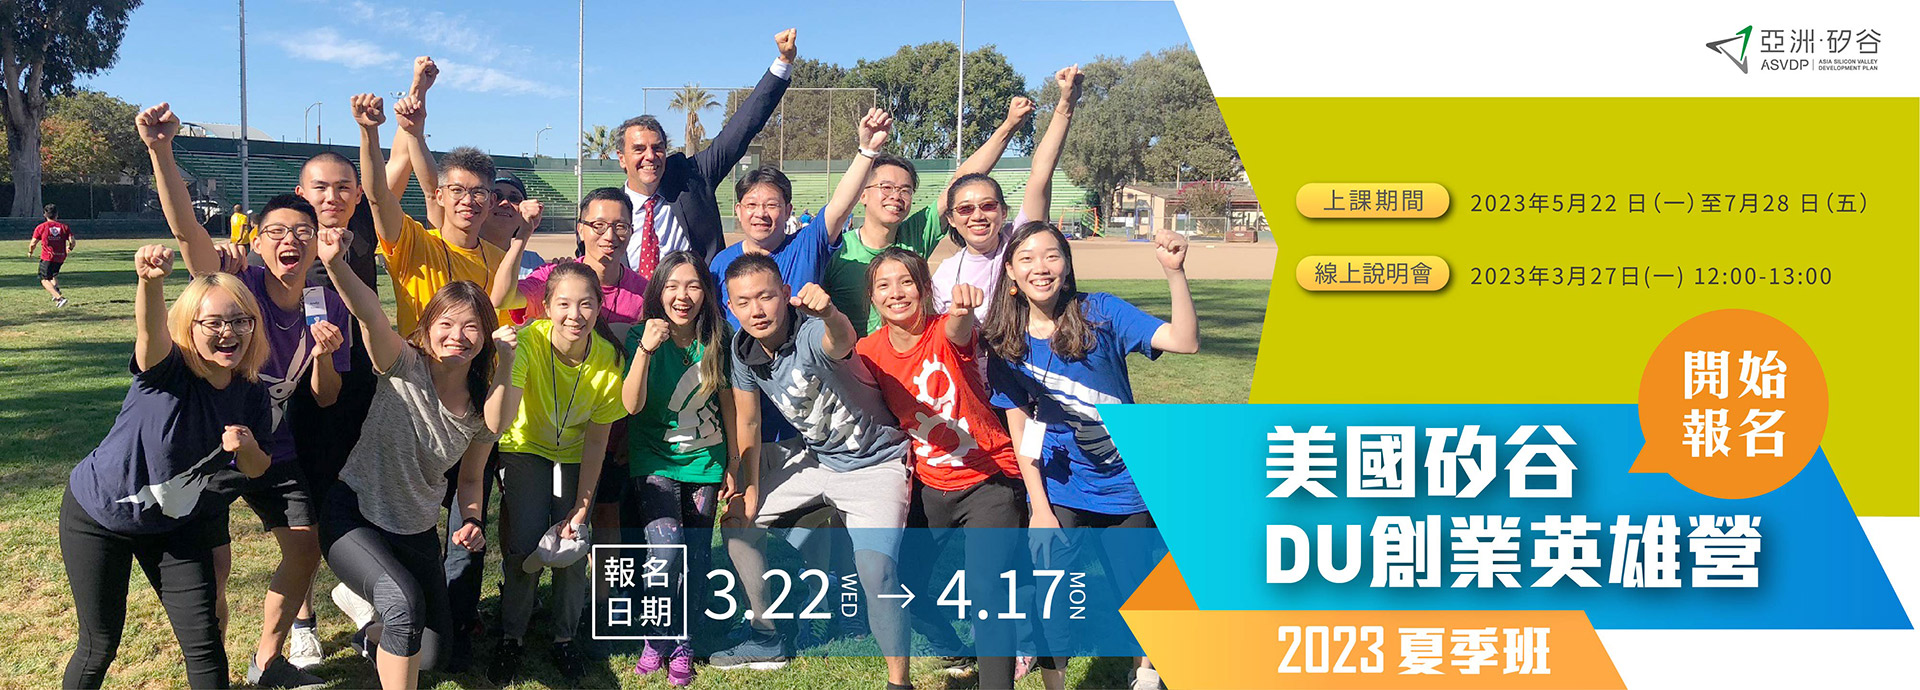 亞洲・矽谷「2023 DU創業英雄營夏季班課程」甄選公告